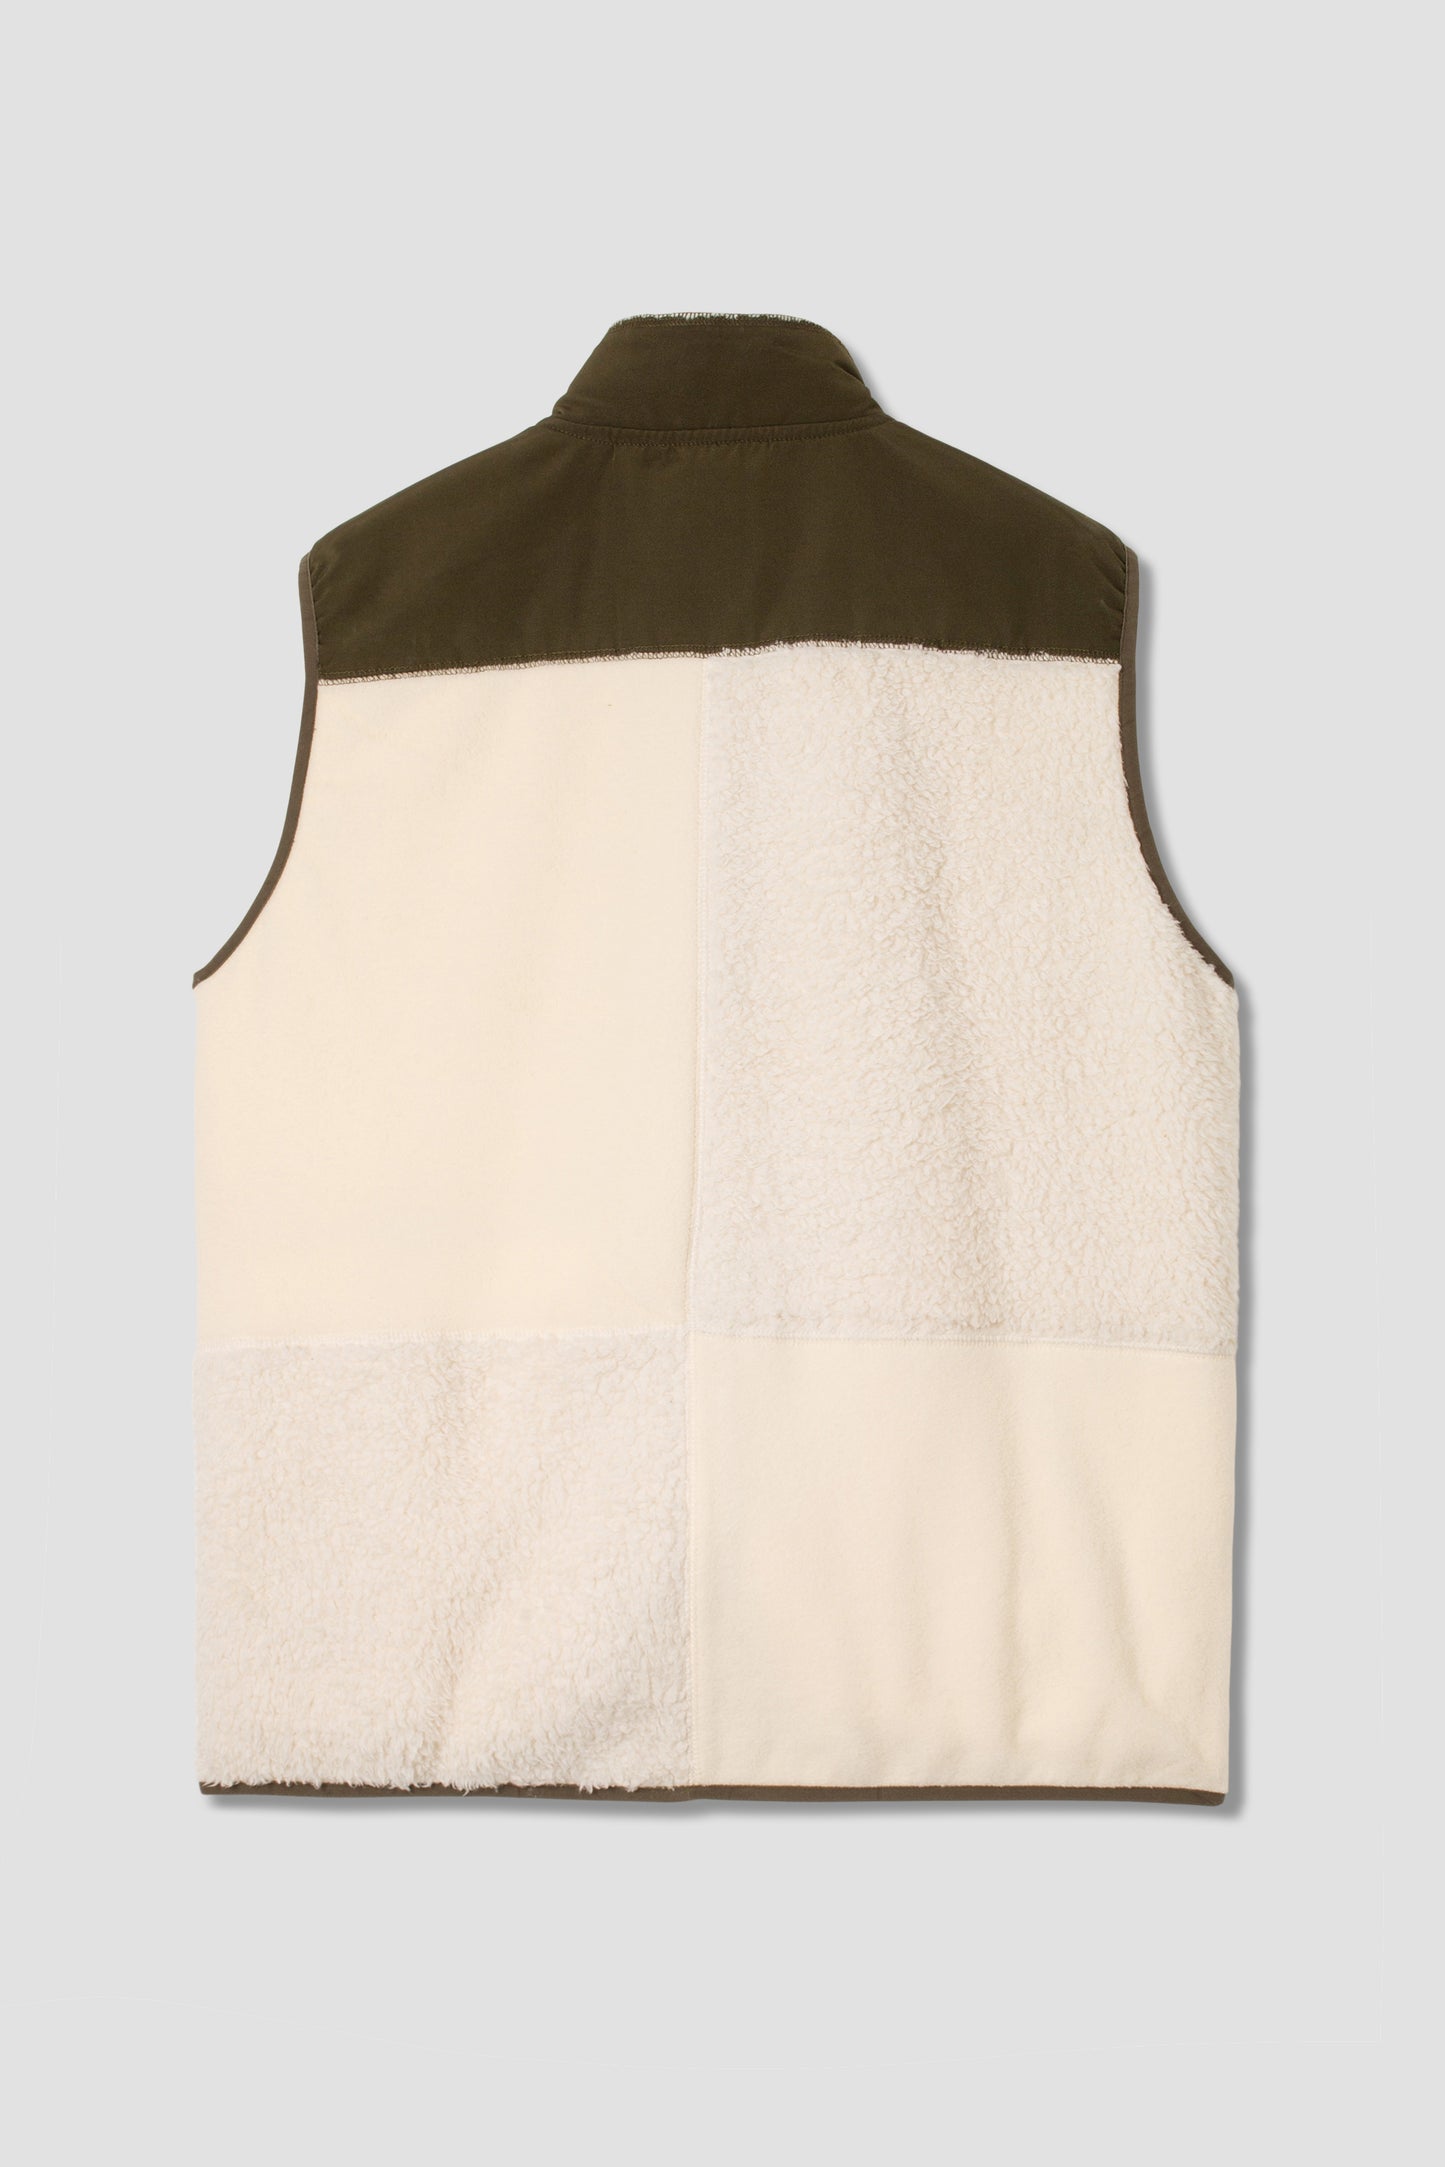 Patchwork Fleece Vest (Natural / Olive)